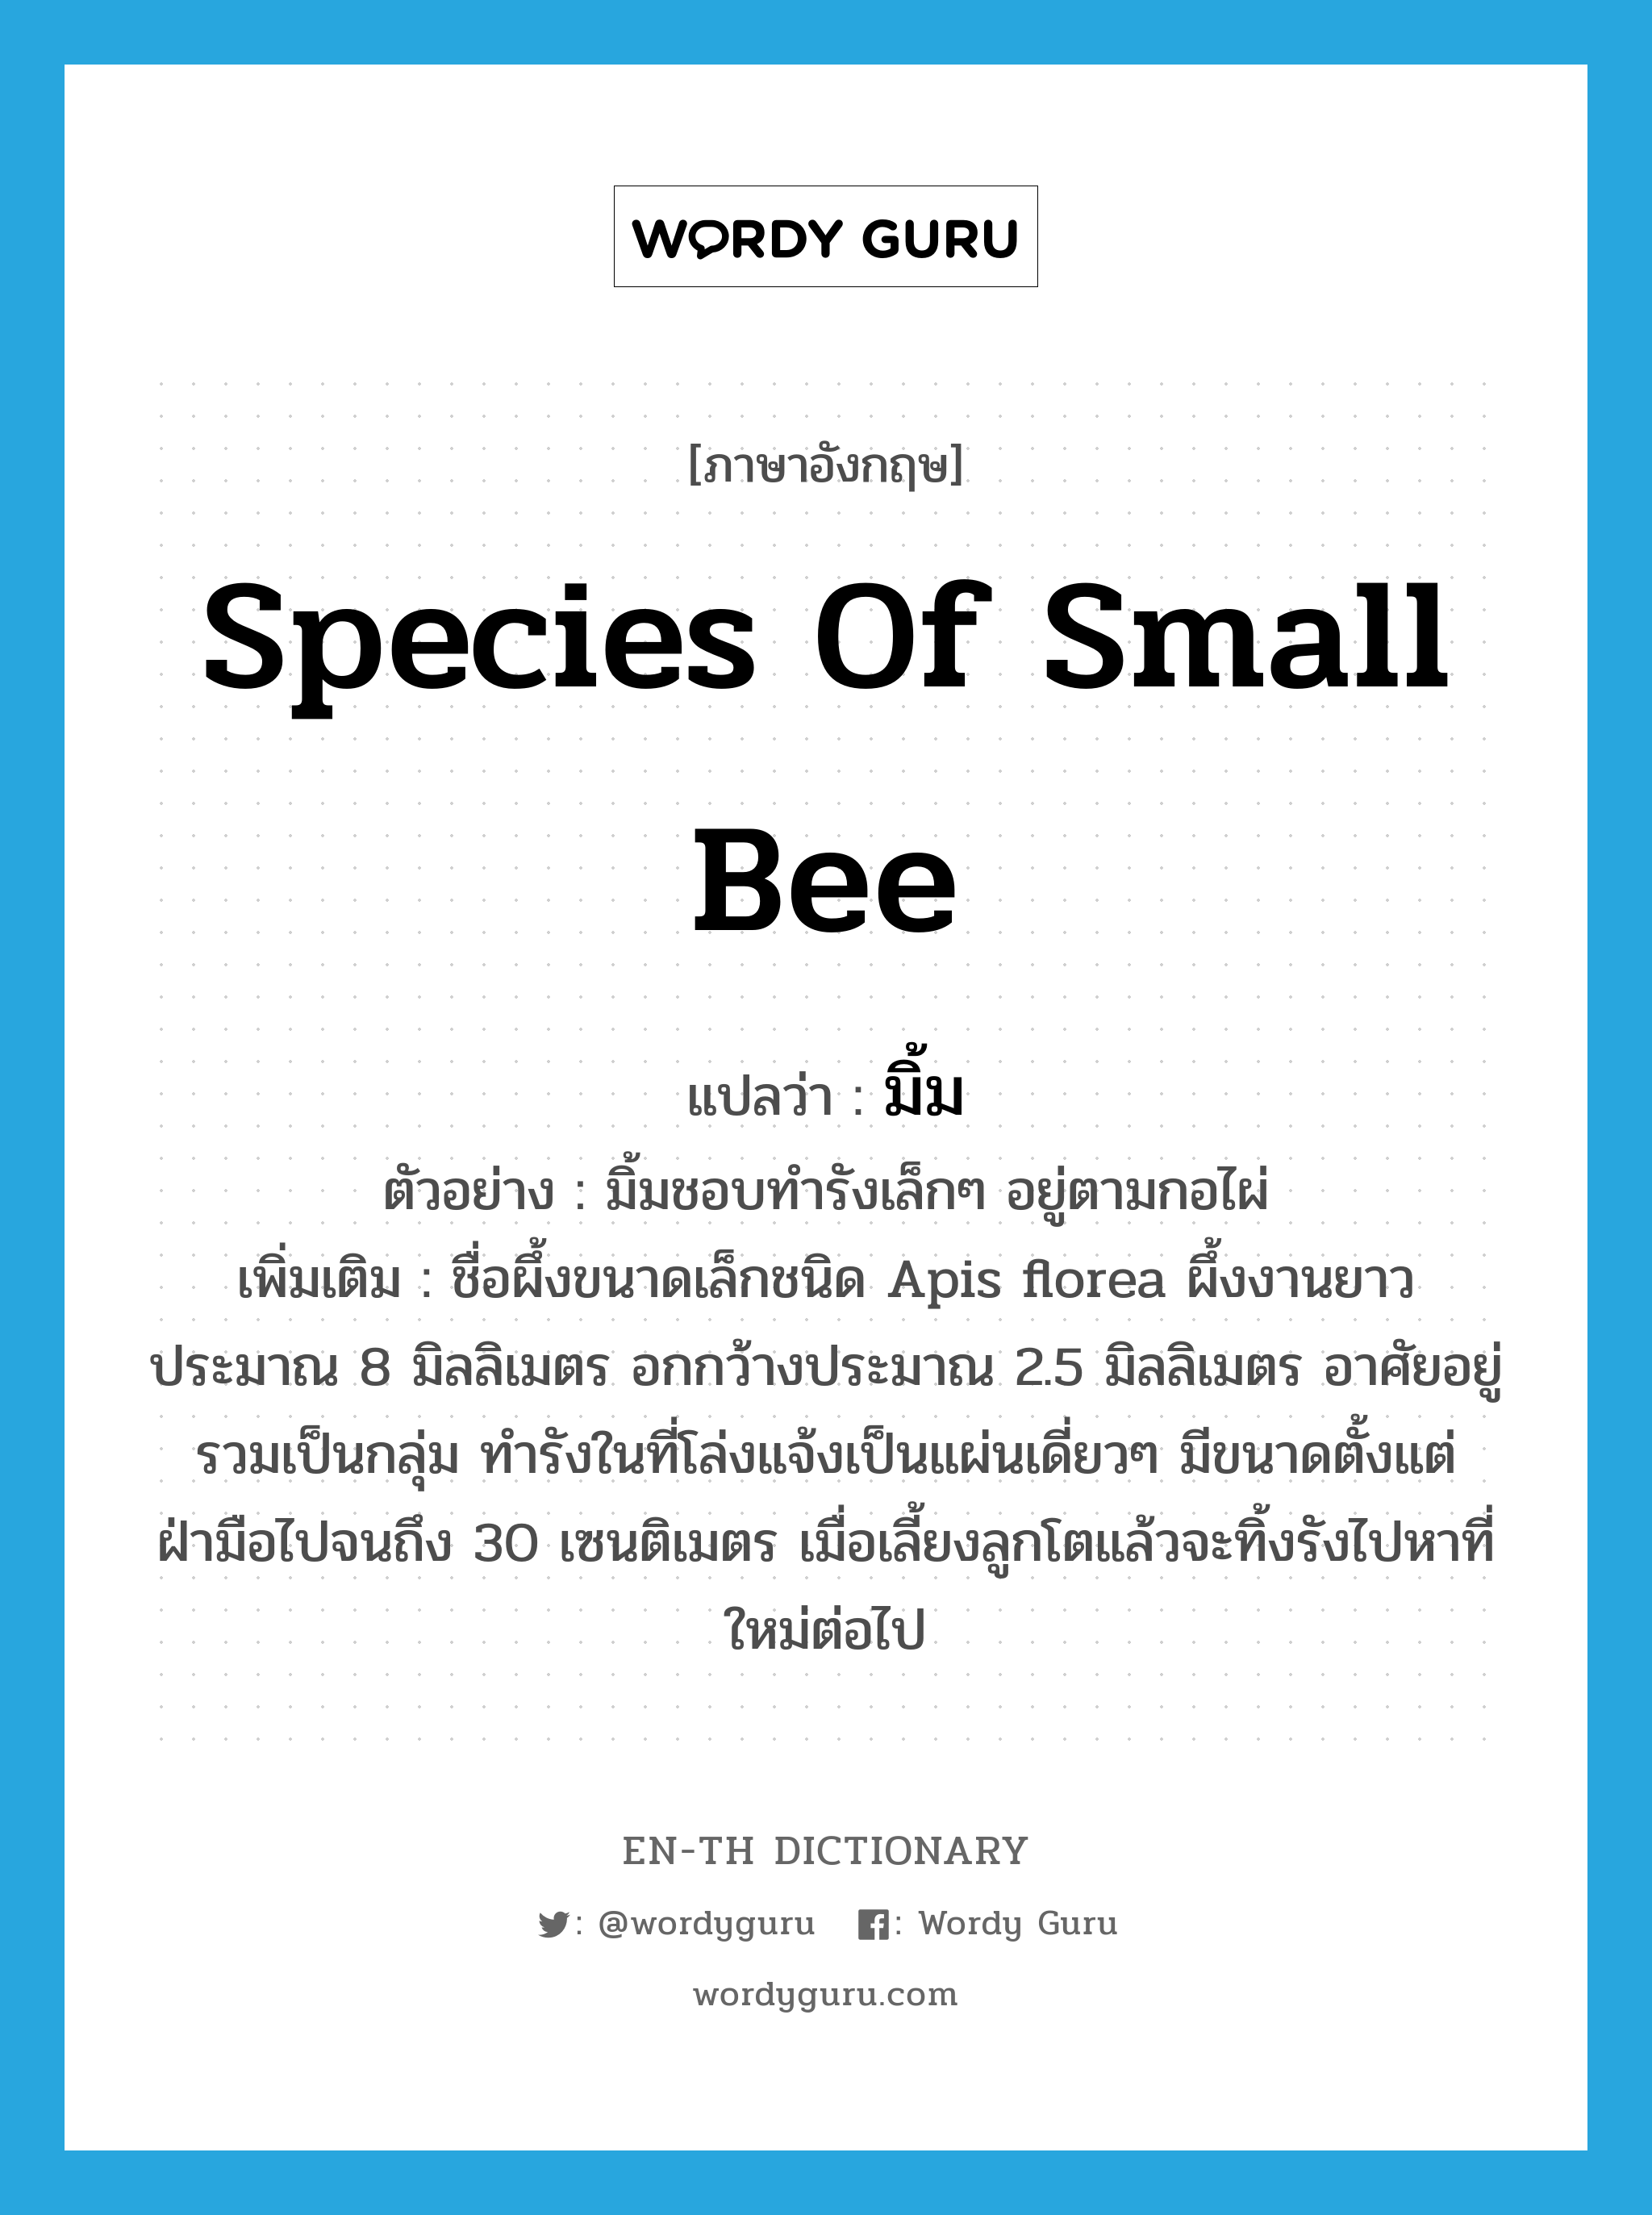 species of small bee แปลว่า?, คำศัพท์ภาษาอังกฤษ species of small bee แปลว่า มิ้ม ประเภท N ตัวอย่าง มิ้มชอบทำรังเล็กๆ อยู่ตามกอไผ่ เพิ่มเติม ชื่อผึ้งขนาดเล็กชนิด Apis florea ผึ้งงานยาวประมาณ 8 มิลลิเมตร อกกว้างประมาณ 2.5 มิลลิเมตร อาศัยอยู่รวมเป็นกลุ่ม ทำรังในที่โล่งแจ้งเป็นแผ่นเดี่ยวๆ มีขนาดตั้งแต่ฝ่ามือไปจนถึง 30 เซนติเมตร เมื่อเลี้ยงลูกโตแล้วจะทิ้งรังไปหาที่ใหม่ต่อไป หมวด N